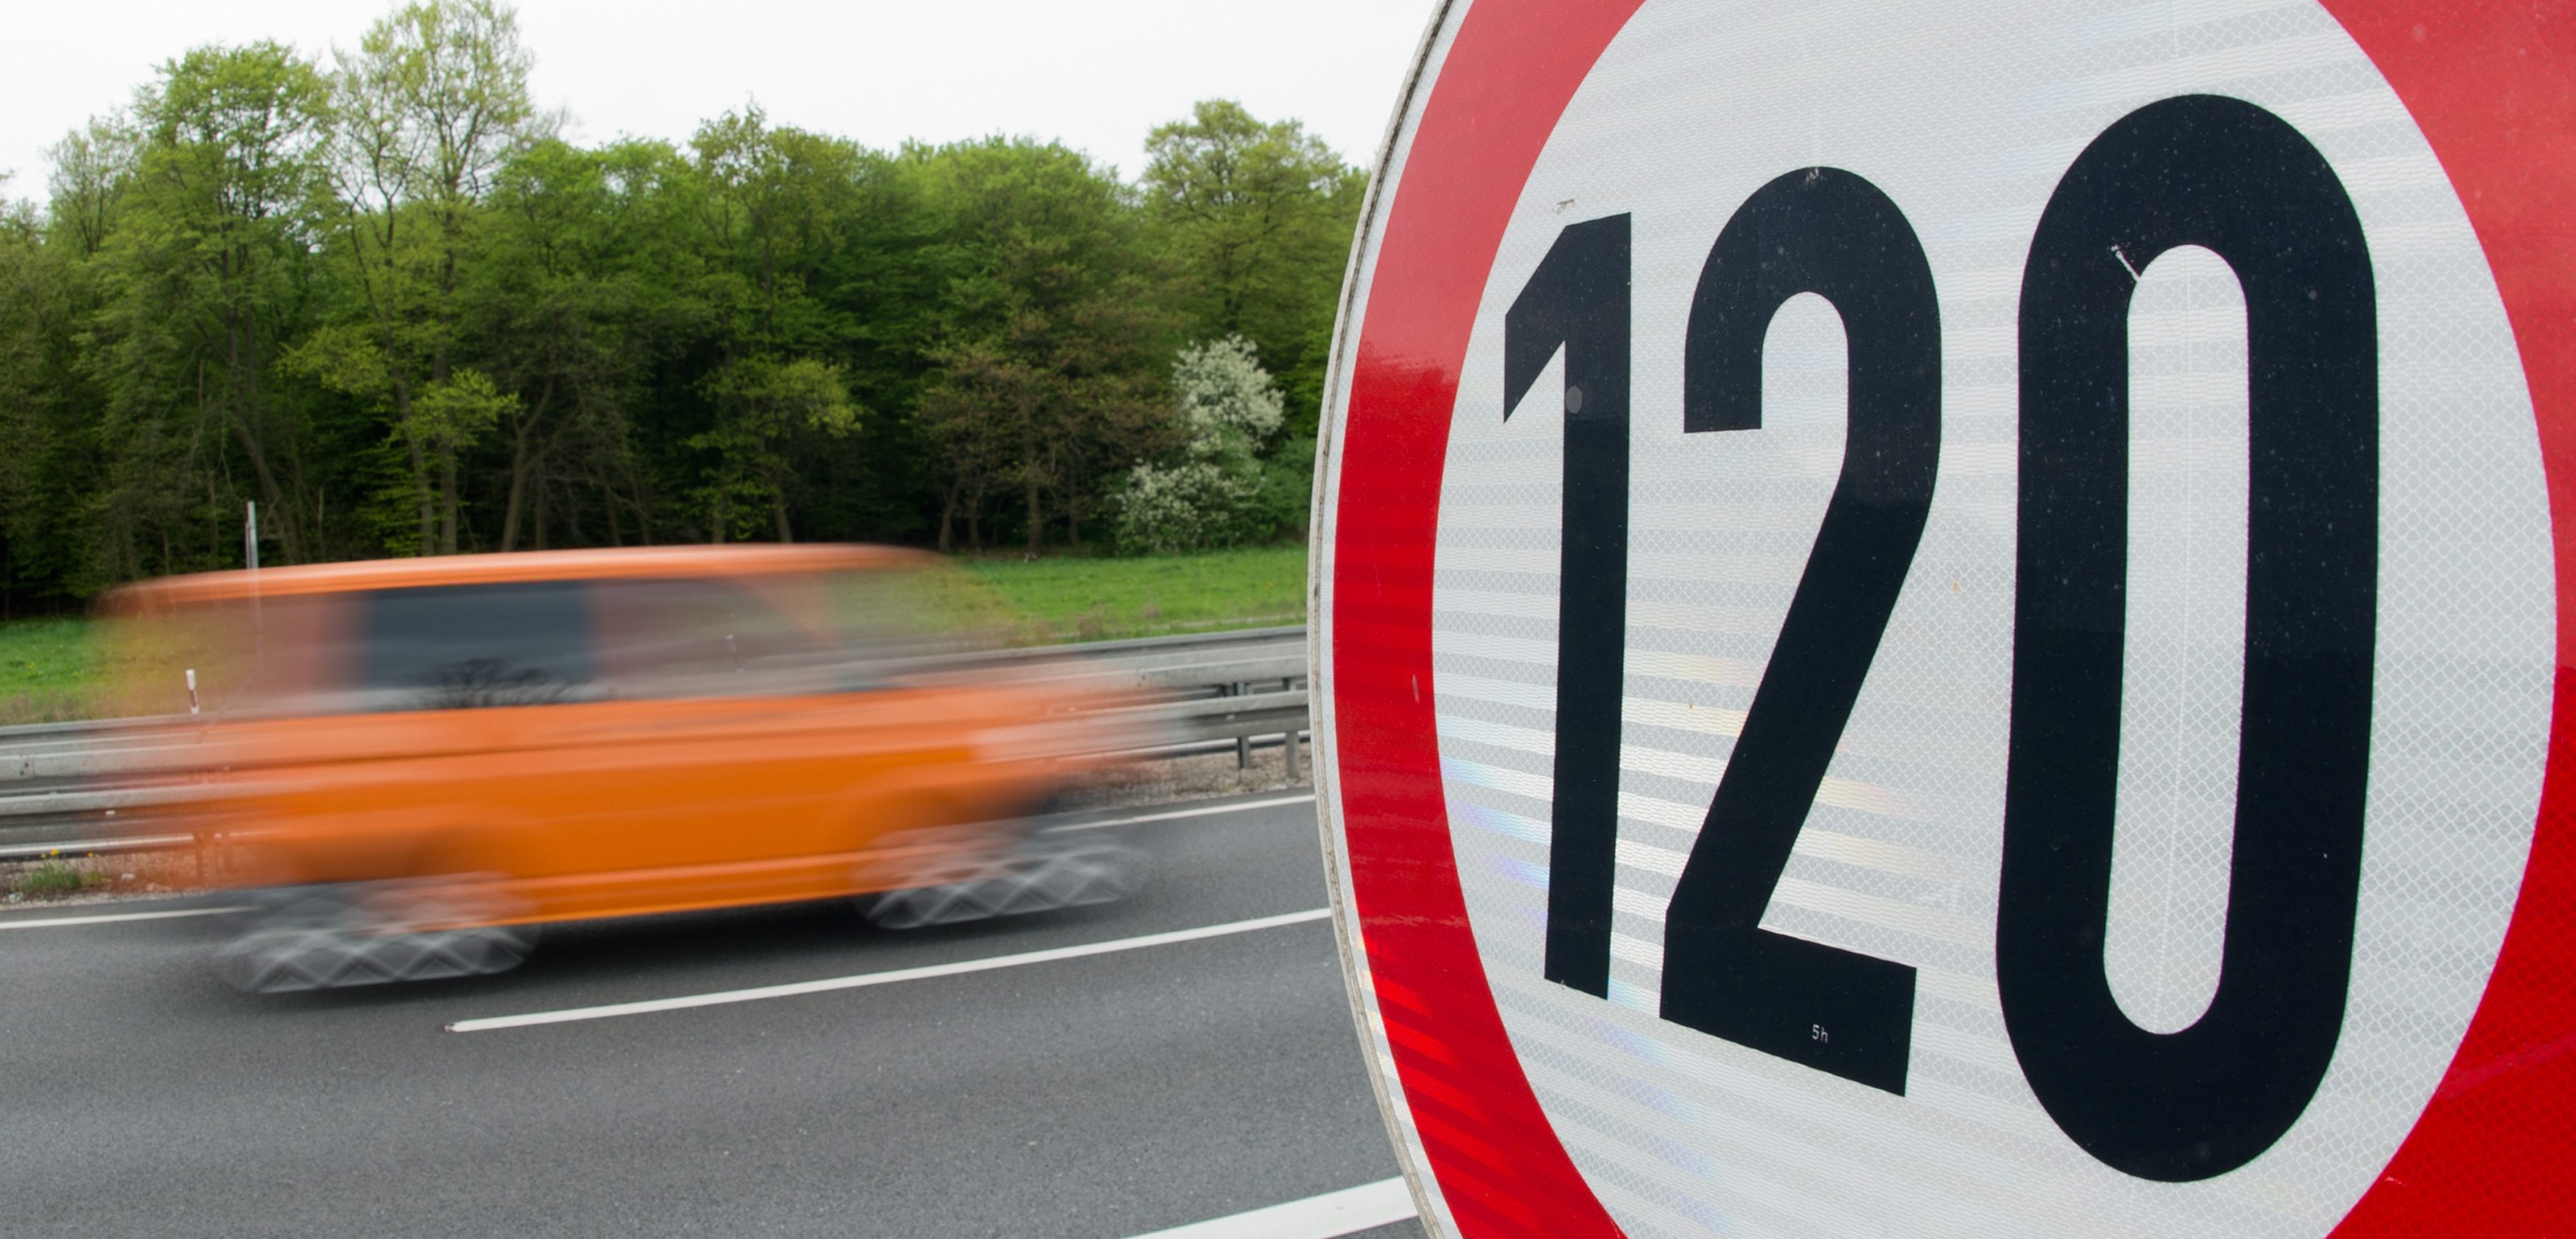 Αντιδράσεις για την αύξηση των ορίων ταχύτητας στις εθνικές οδούς